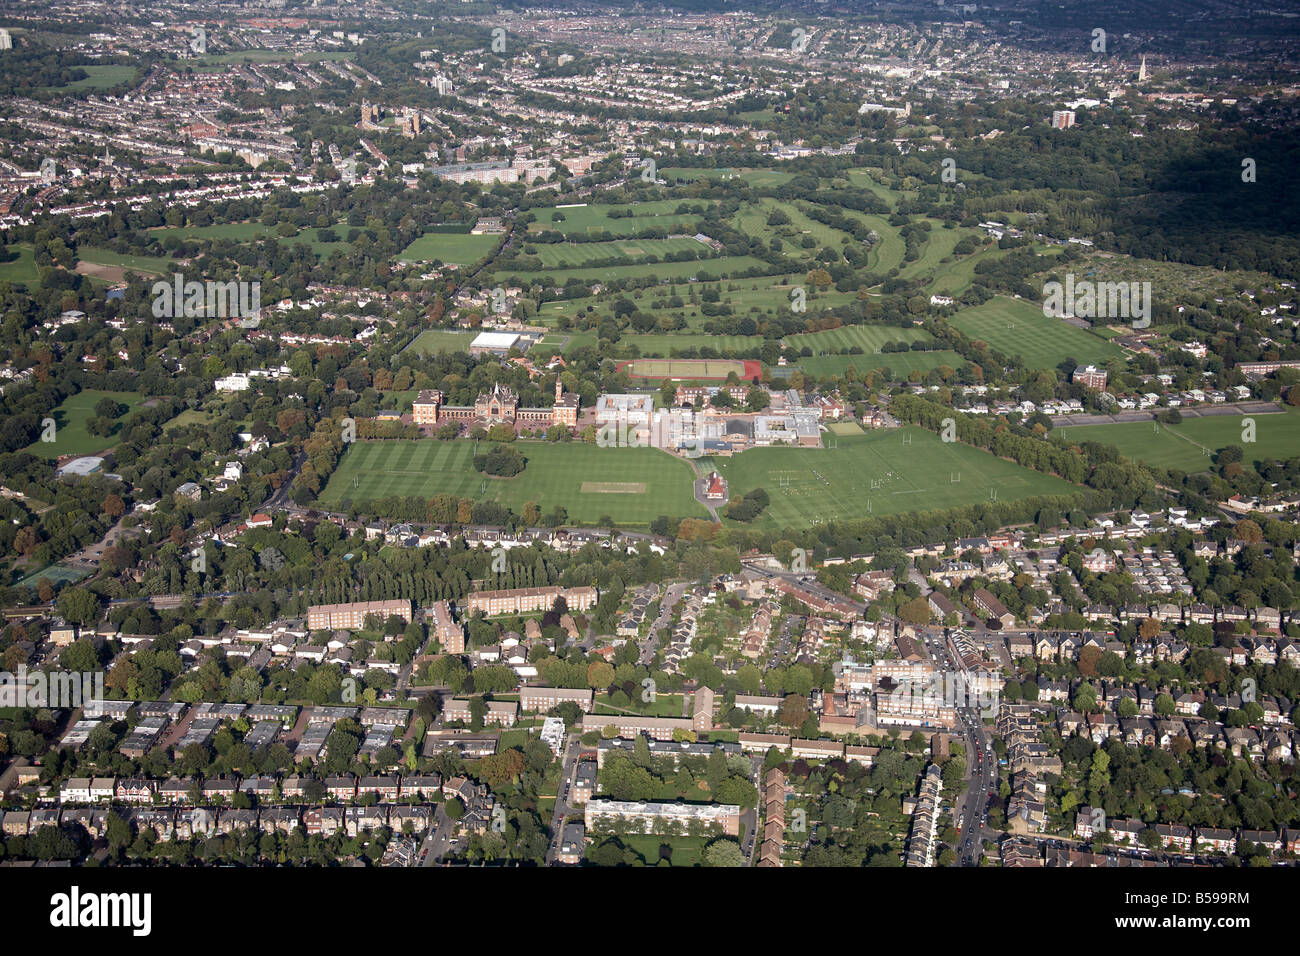 Vista aerea del nord est Dulwich College campi da gioco Alleyn Park Road Dulwich Sydenham Hill Golf case suburbane di Londra Foto Stock